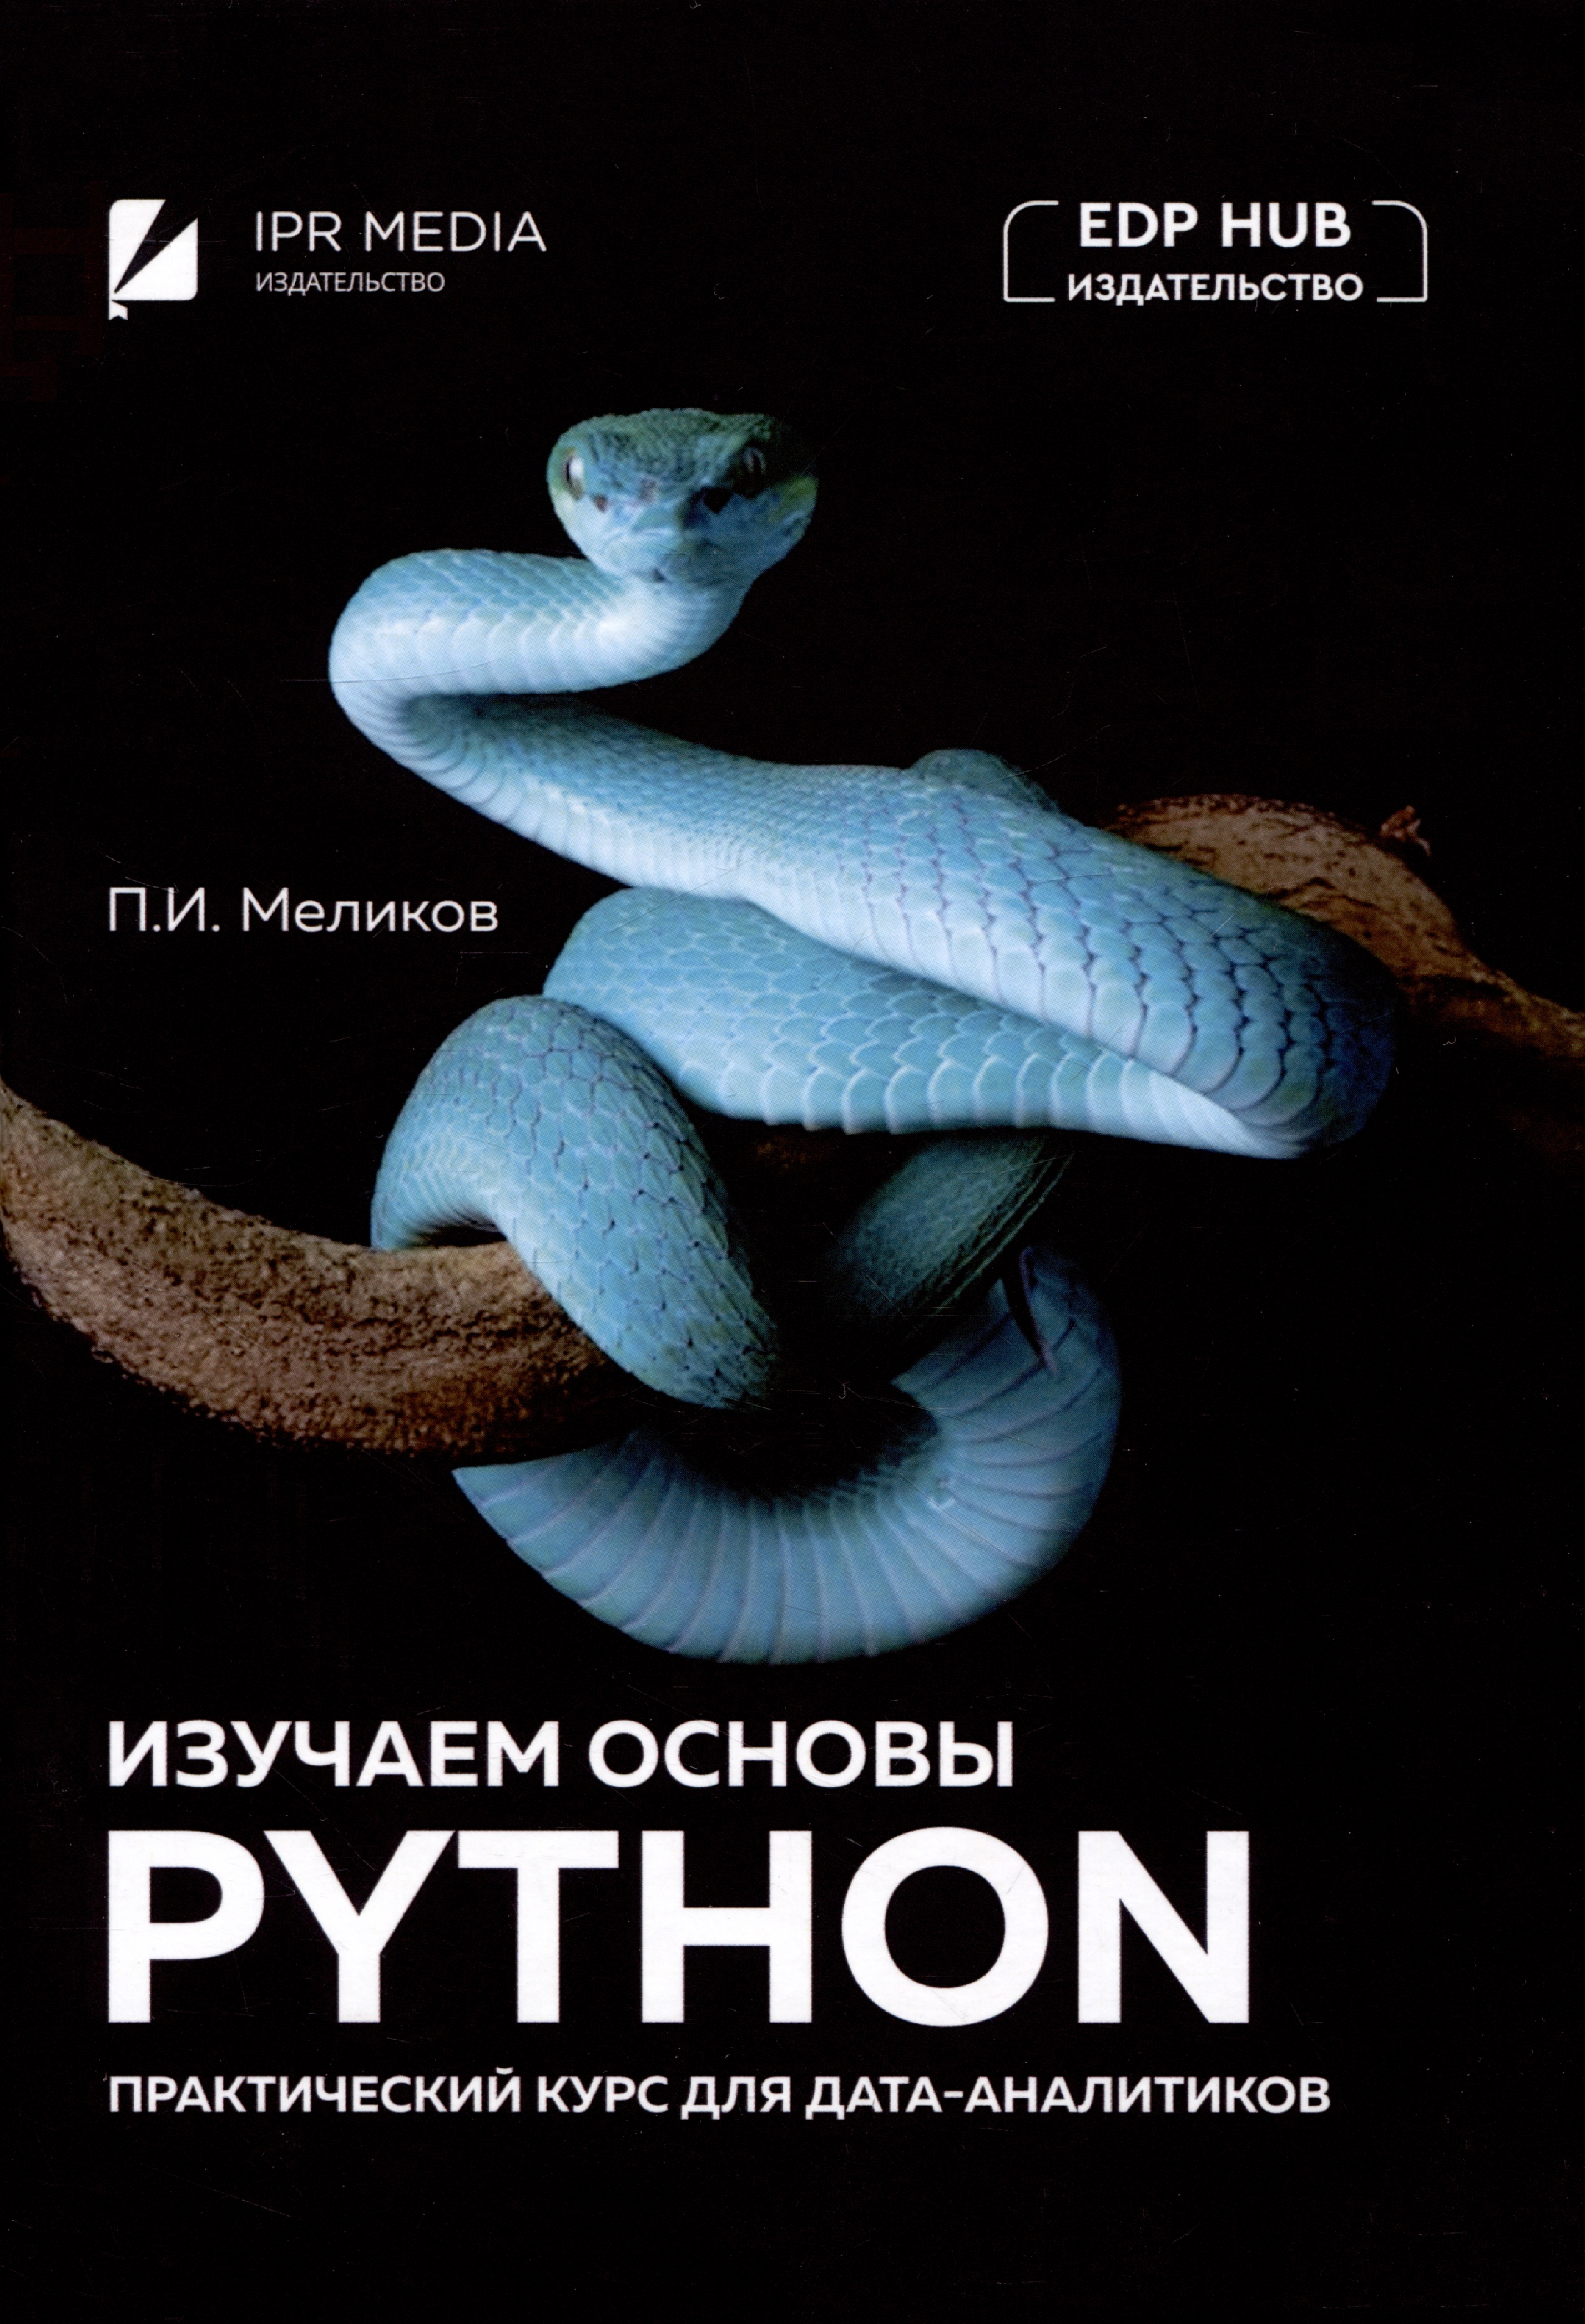 Меликов Павел Ильич Изучаем основы Python. Практический курс для дата-аналитиков седер наоми python экспресс курс 3 е издание